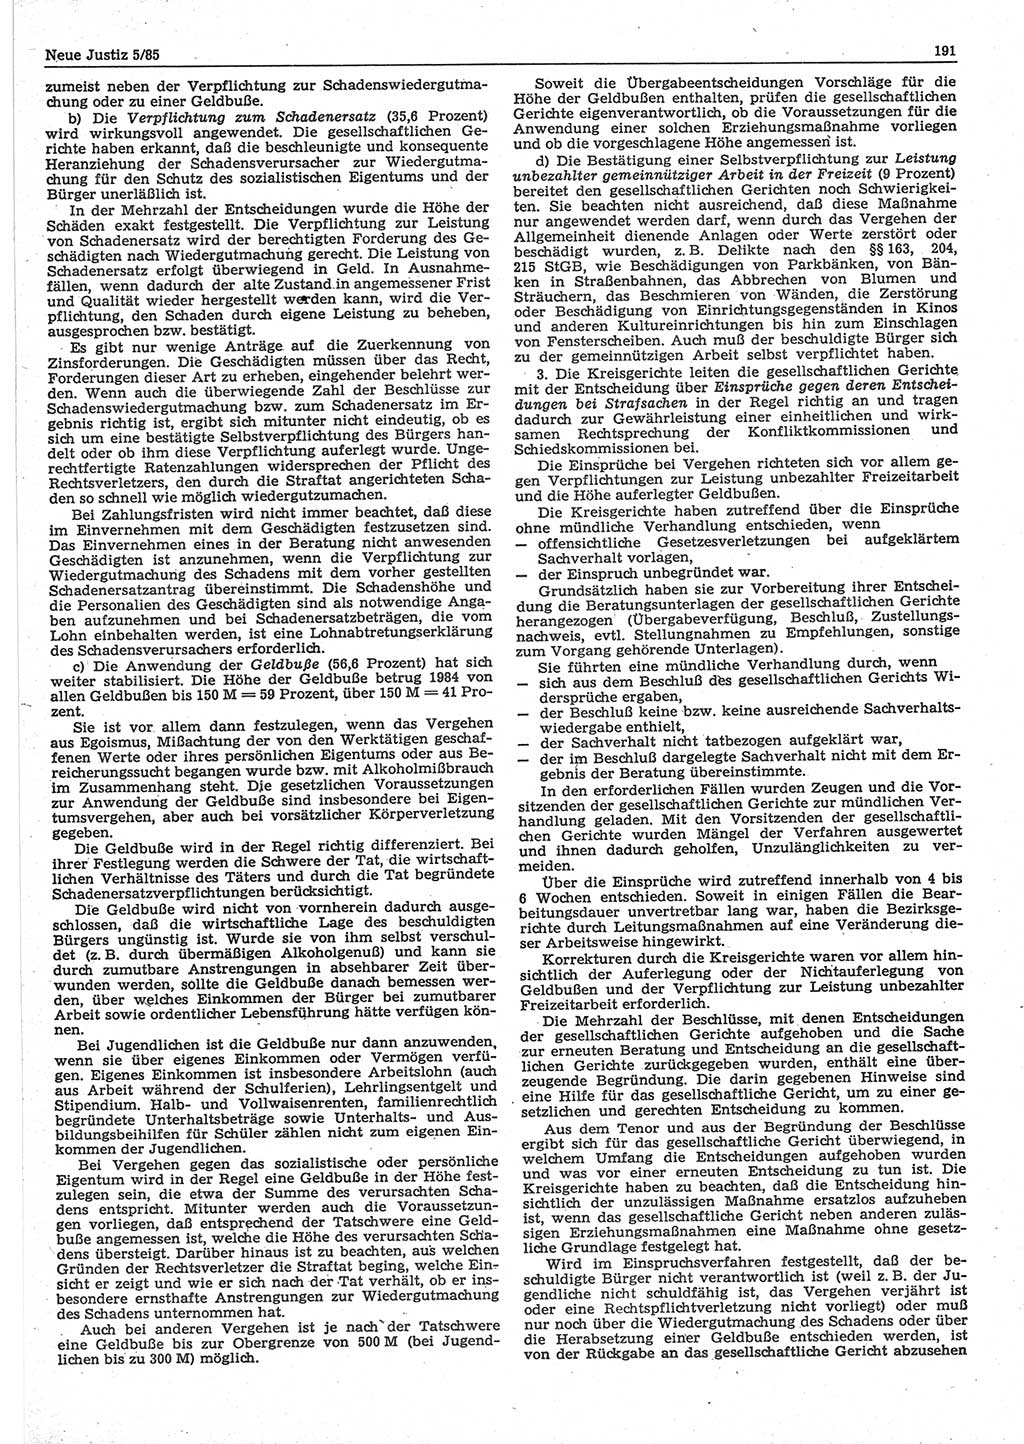 Neue Justiz (NJ), Zeitschrift für sozialistisches Recht und Gesetzlichkeit [Deutsche Demokratische Republik (DDR)], 39. Jahrgang 1985, Seite 191 (NJ DDR 1985, S. 191)